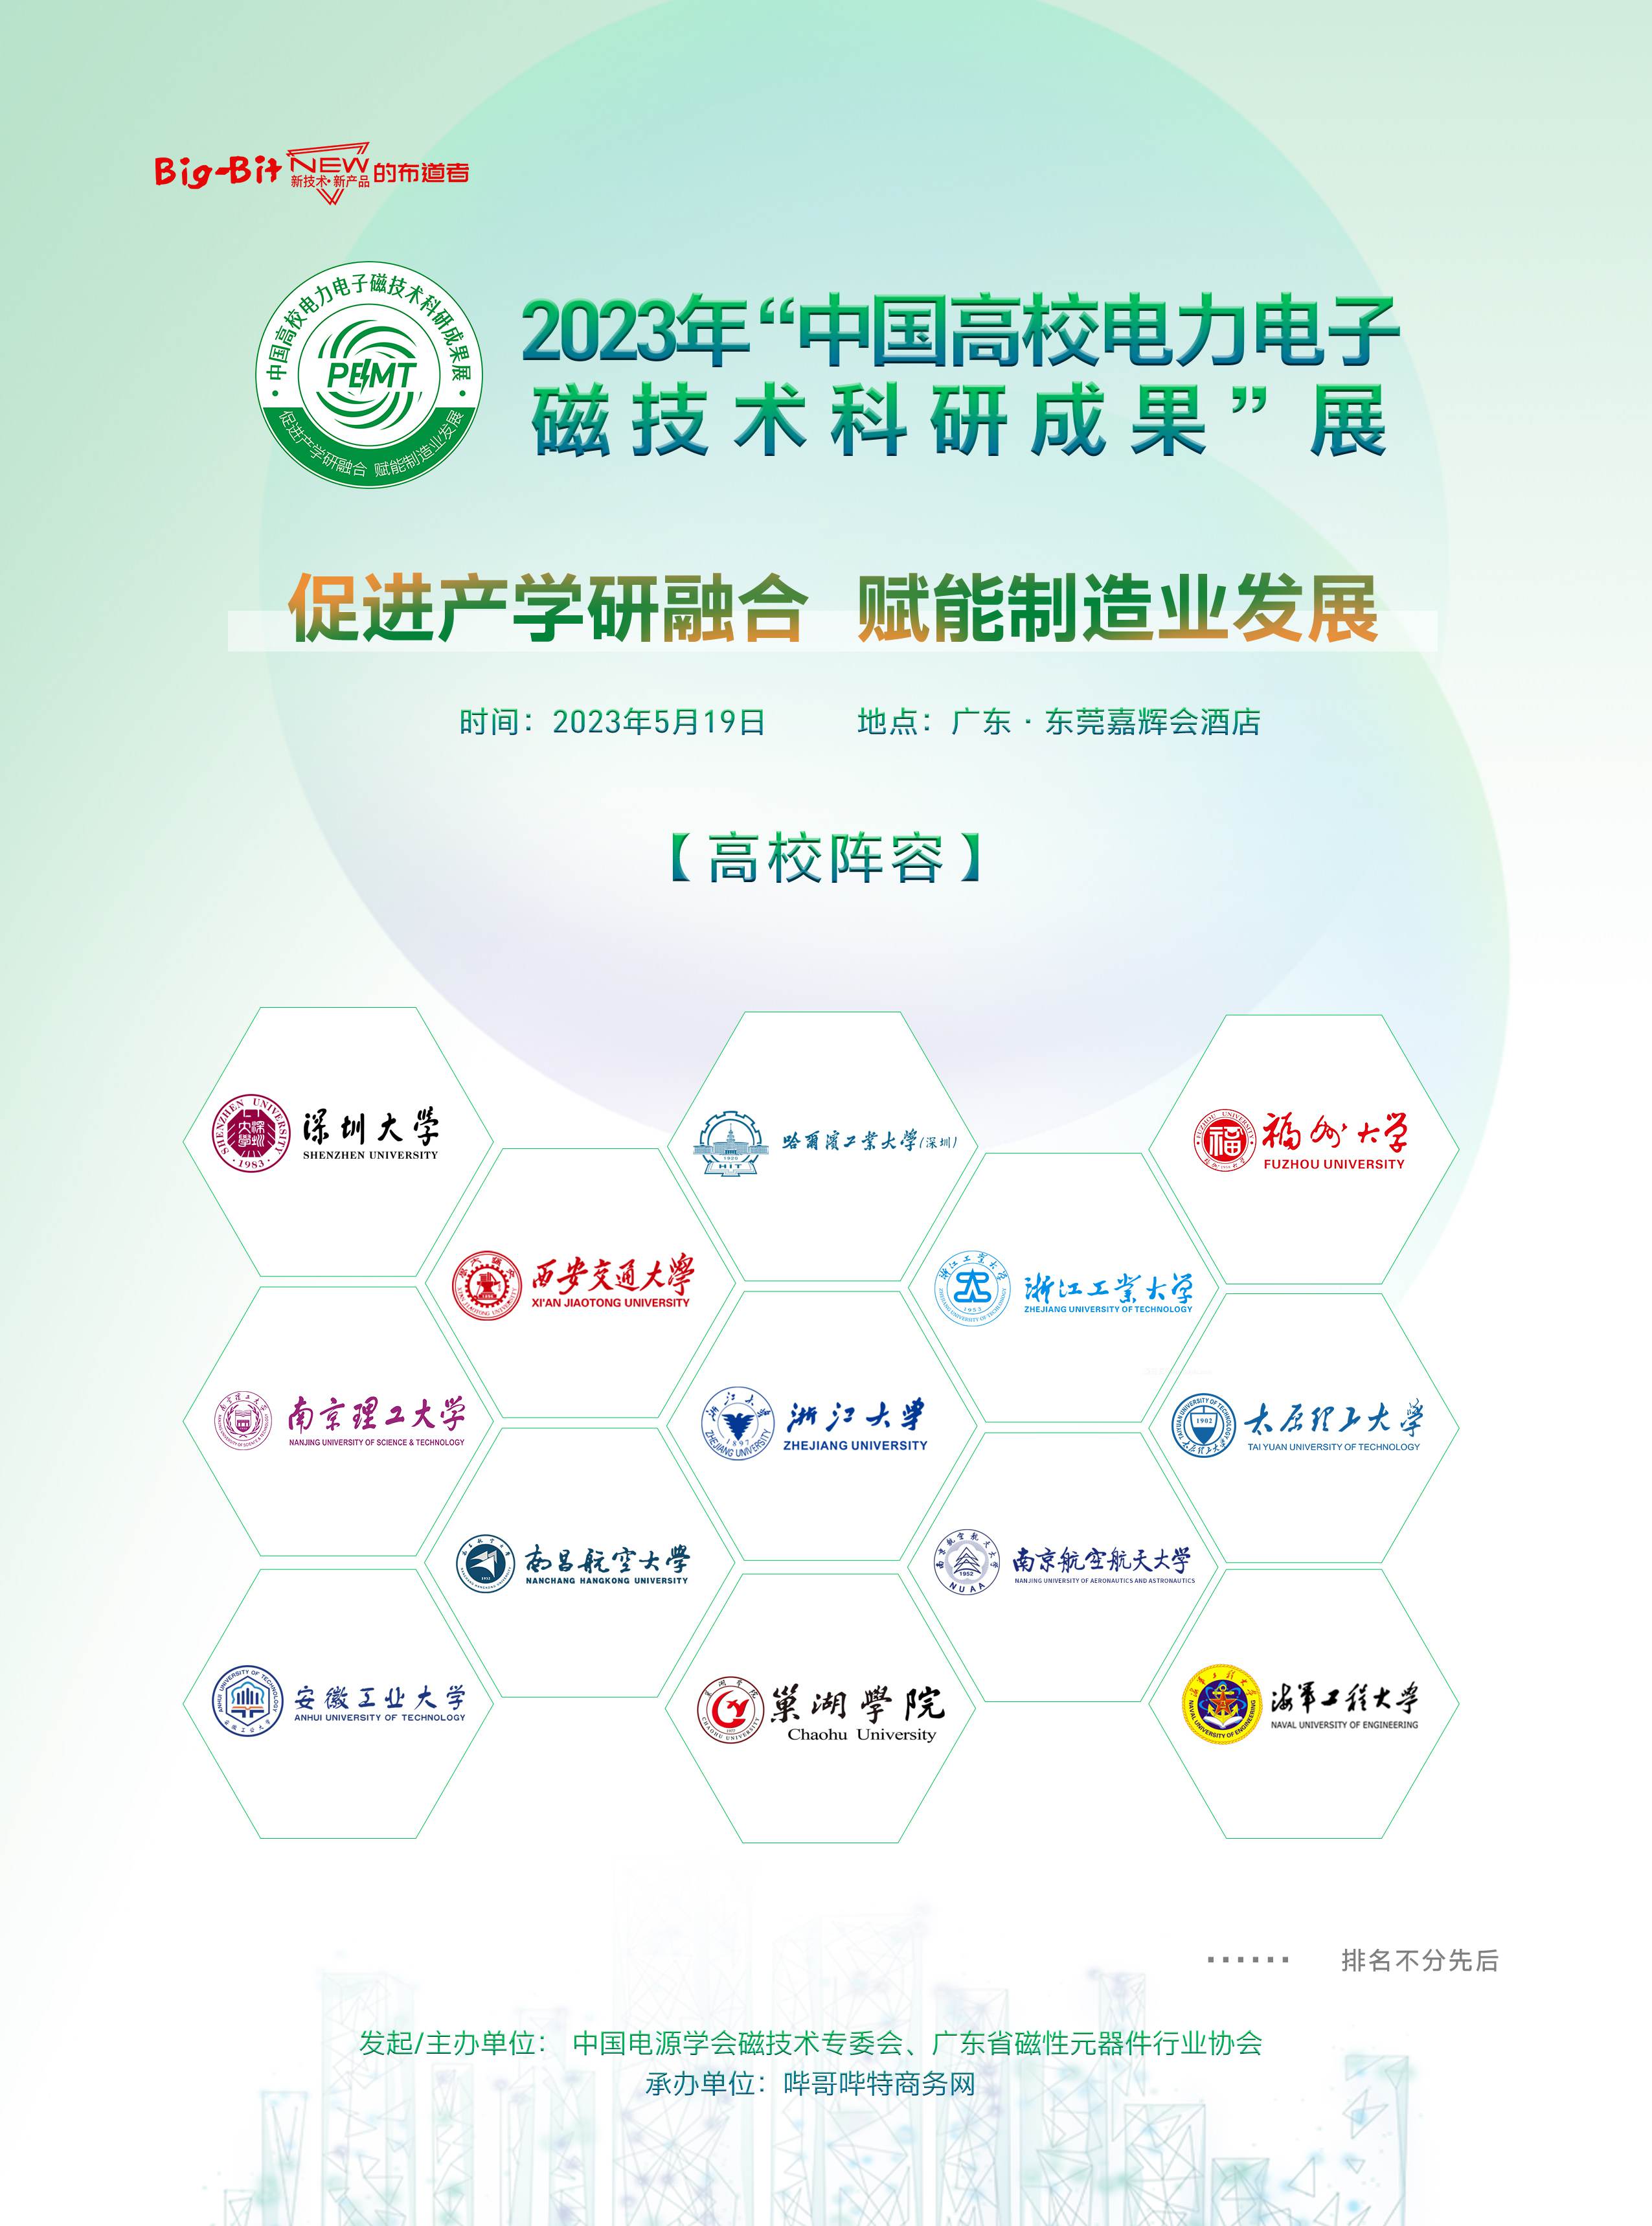 中国高校电力电子磁技术科研成果展即将举办